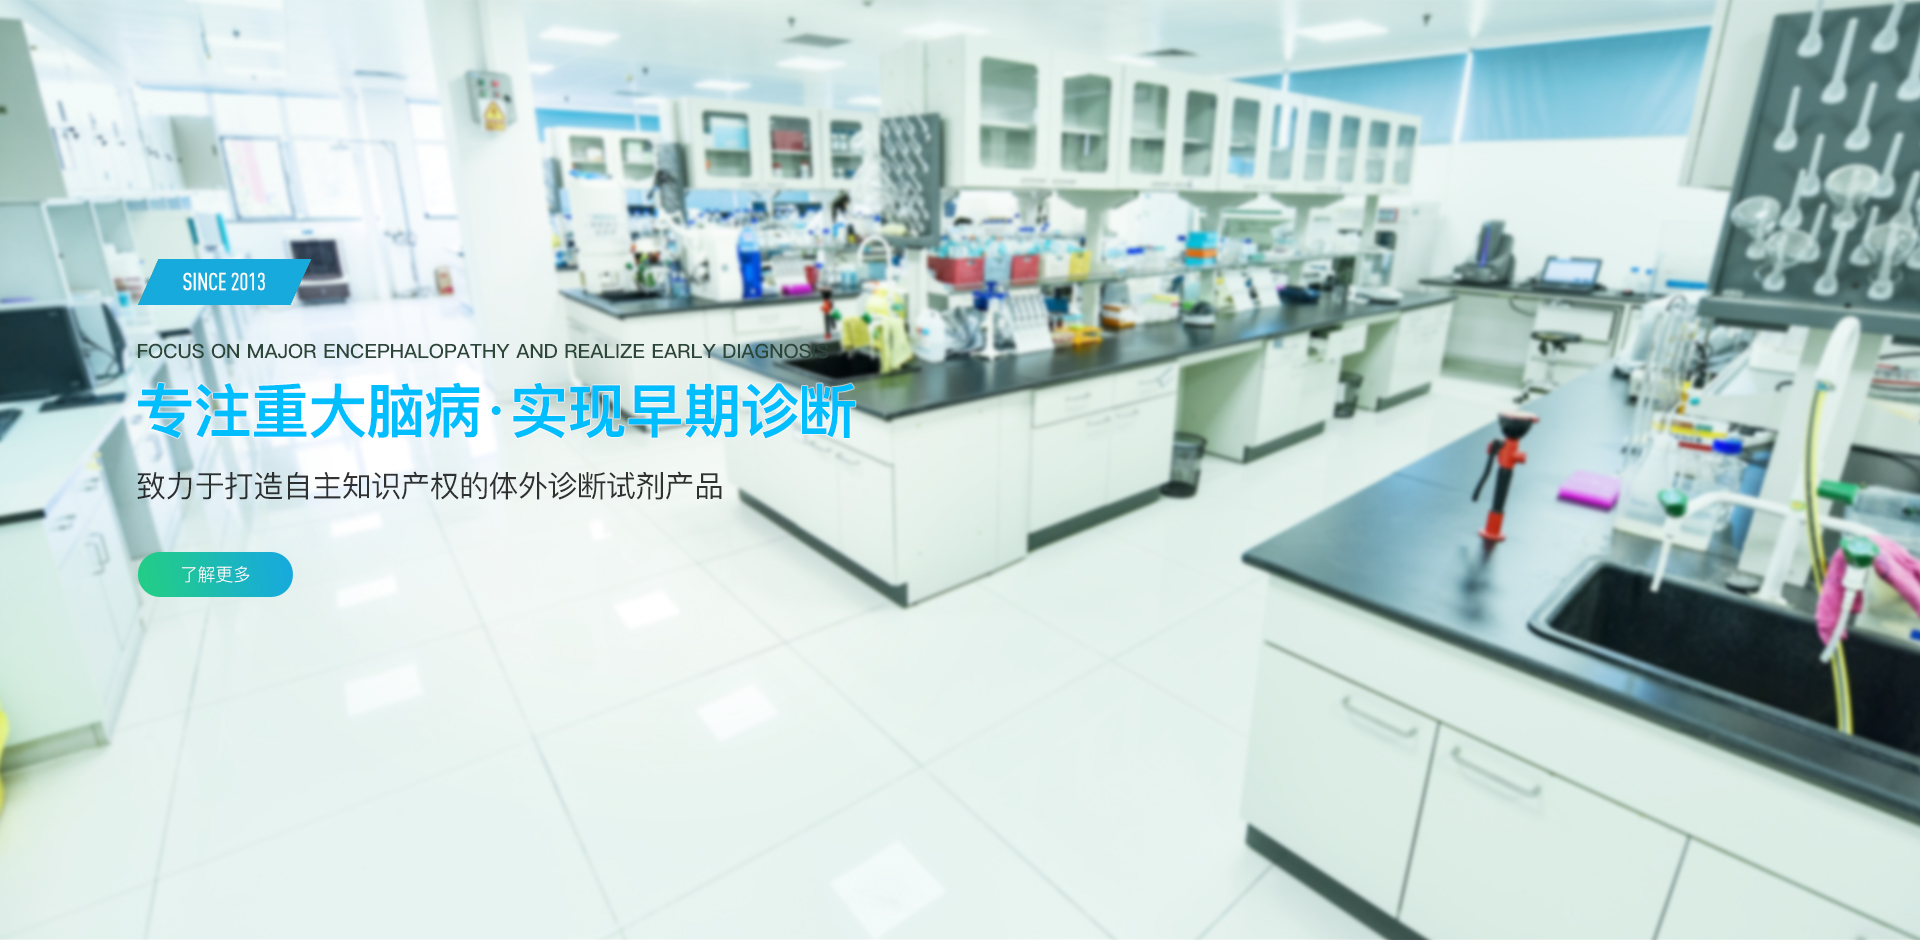 流式细胞仪 、分子检测仪 、医学检验服务 、生物科技研发 、北京尊龙凯时